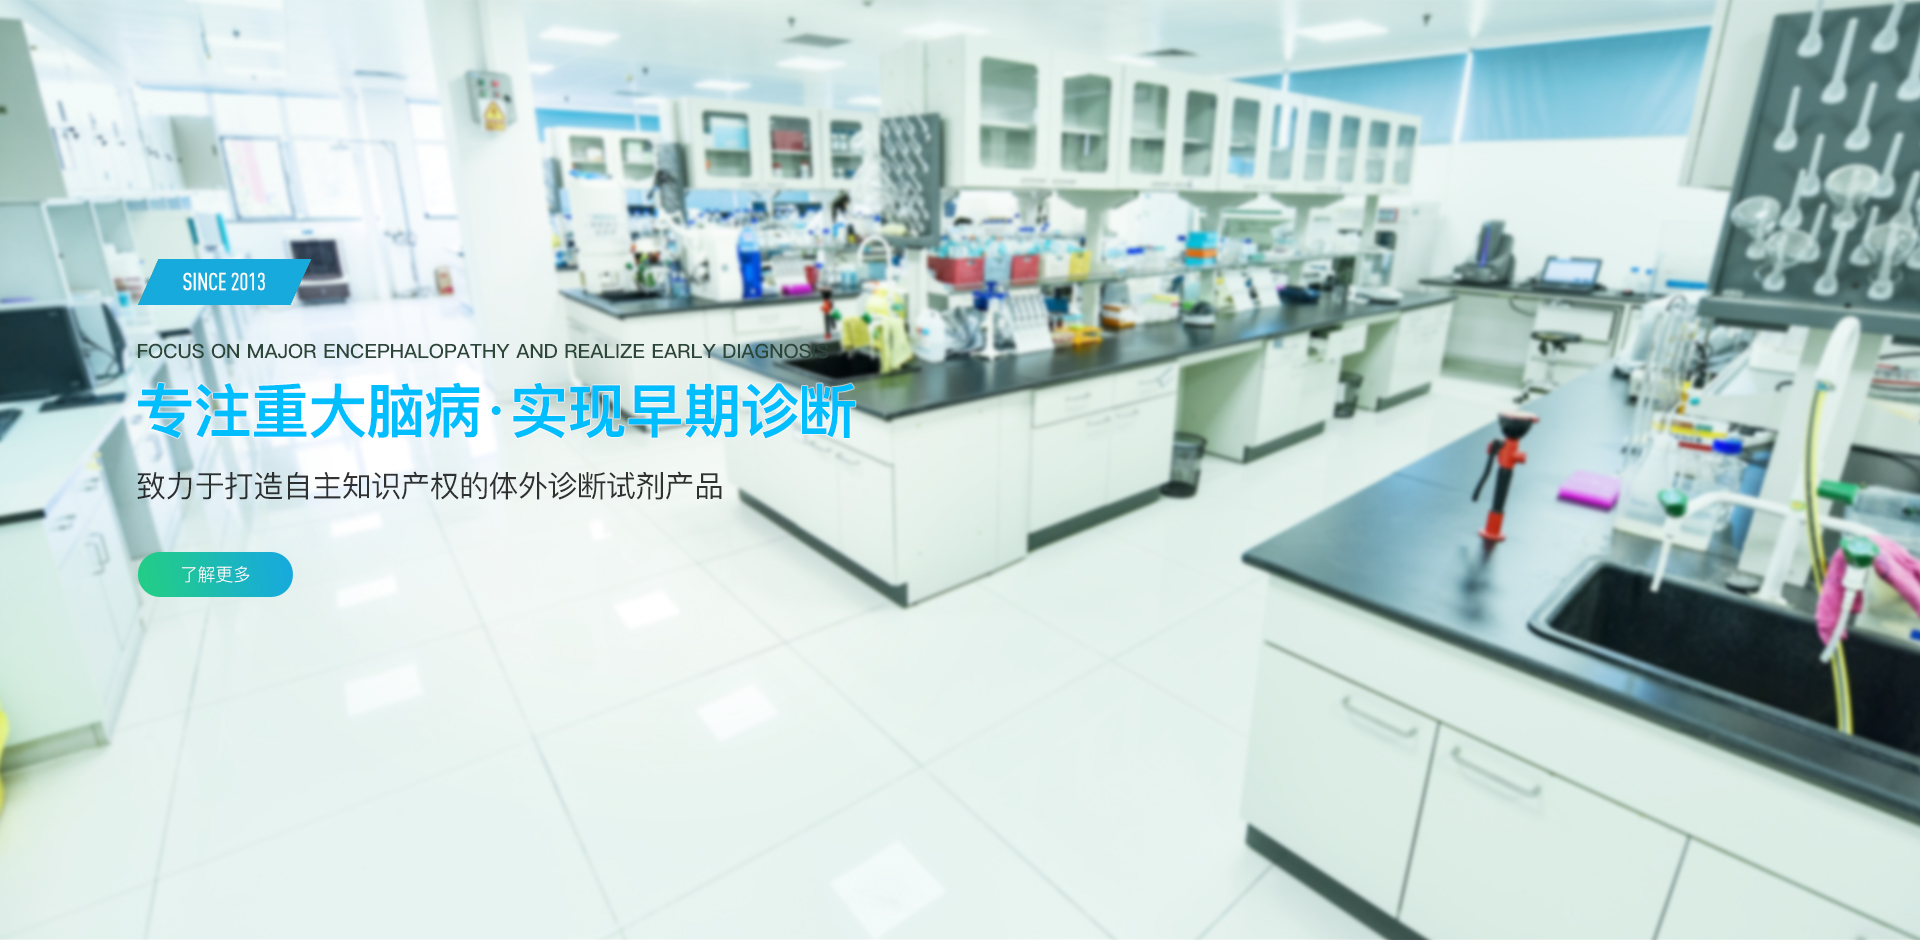 流式细胞仪 、分子检测仪 、医学检验服务 、生物科技研发 、北京尊龙凯时